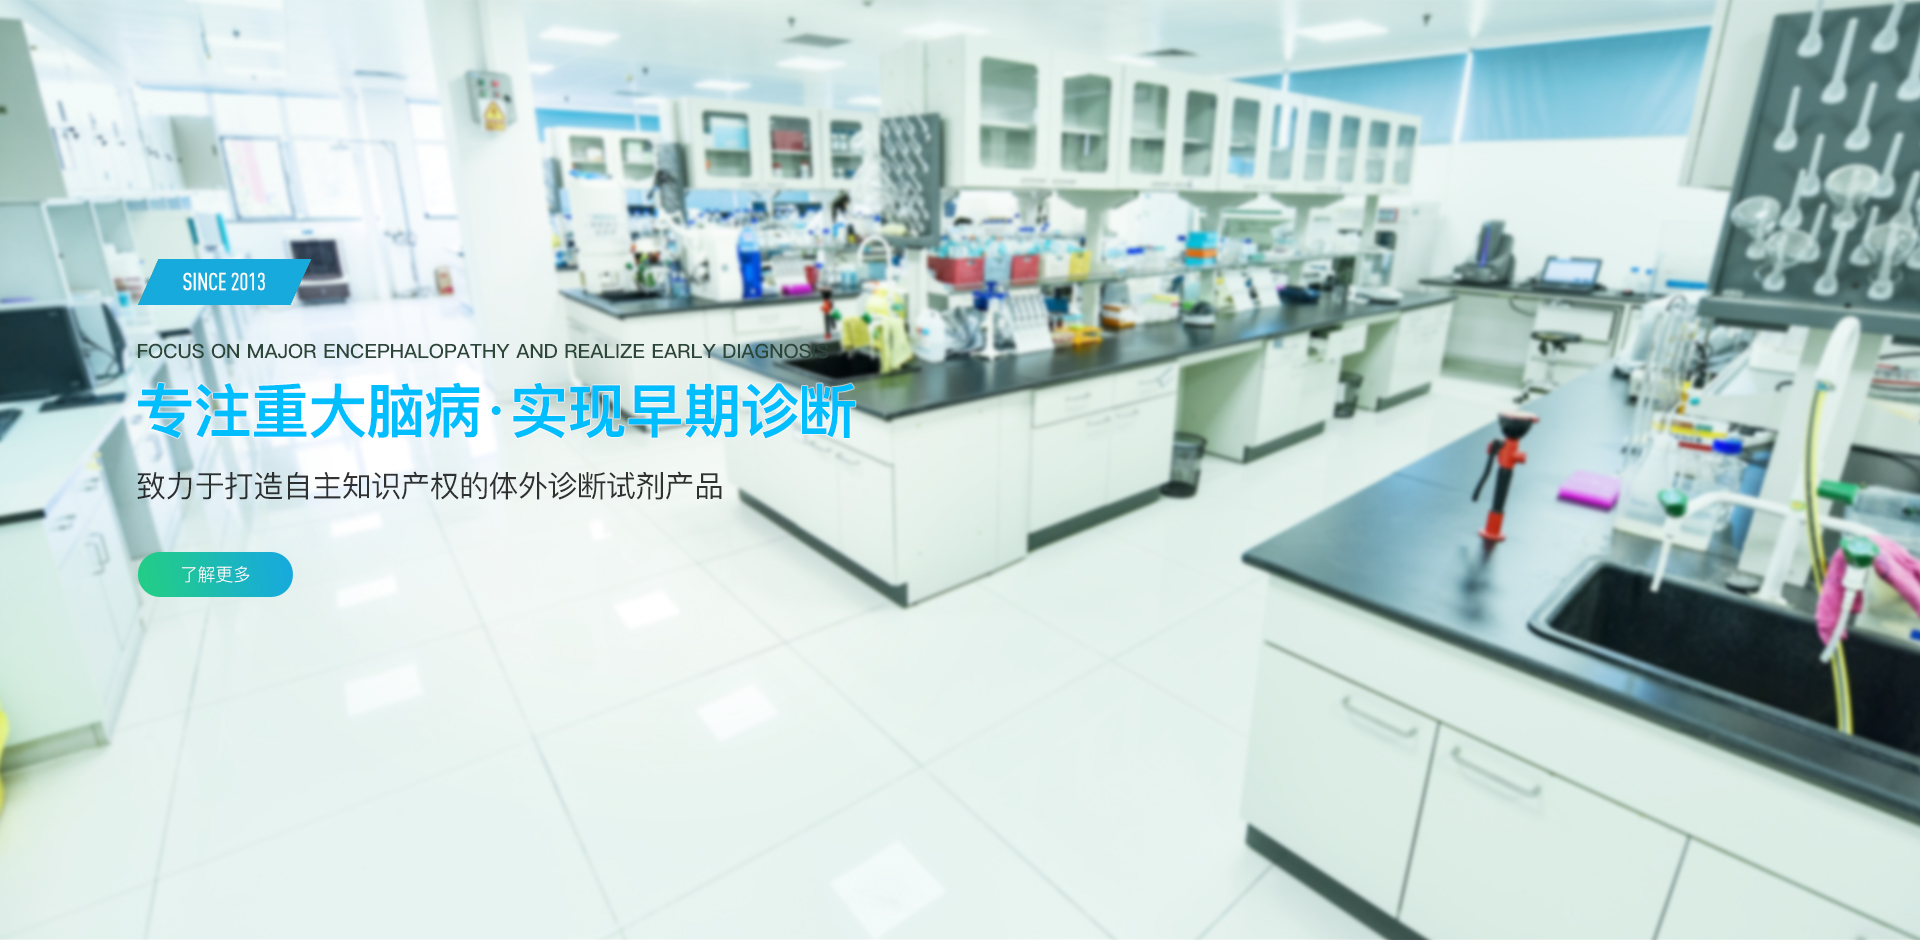 流式细胞仪 、分子检测仪 、医学检验服务 、生物科技研发 、北京尊龙凯时